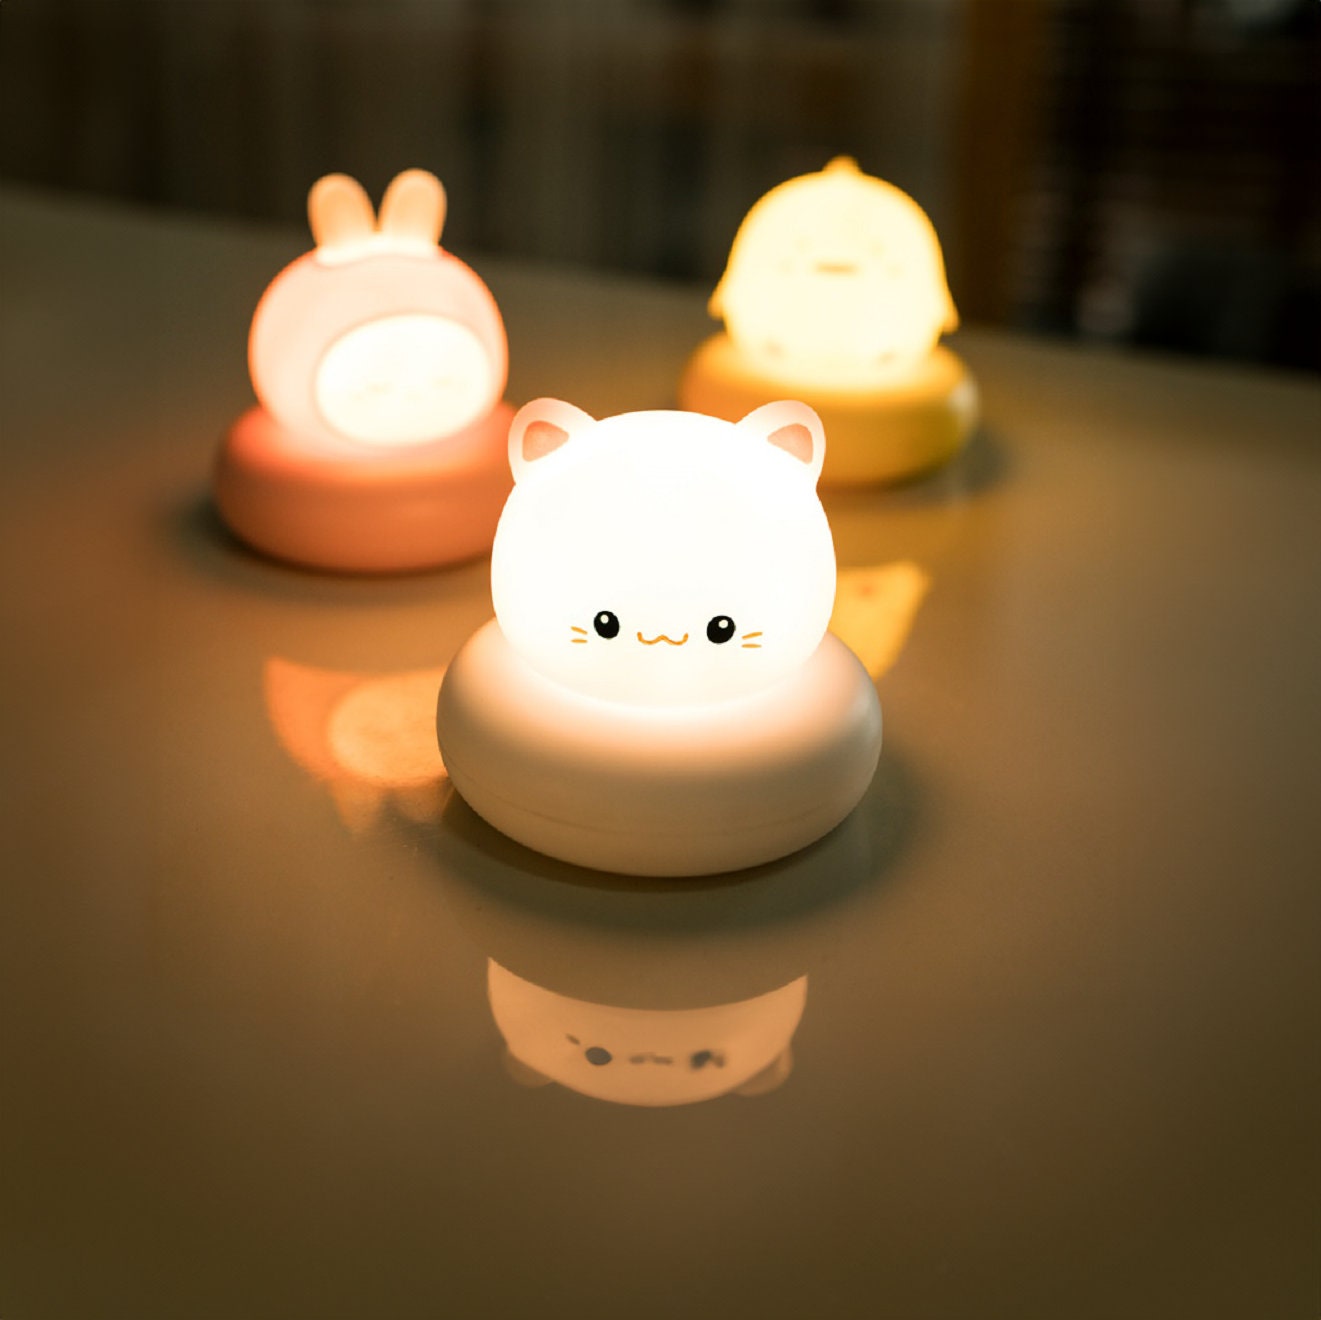 Capybara Veilleuse Mignonne de Dessin Animé Lampe LED Rechargeable par USB  Lampe de Chevet Tactile pour Nouveau-Né Lampe de Noël pour Décoration de